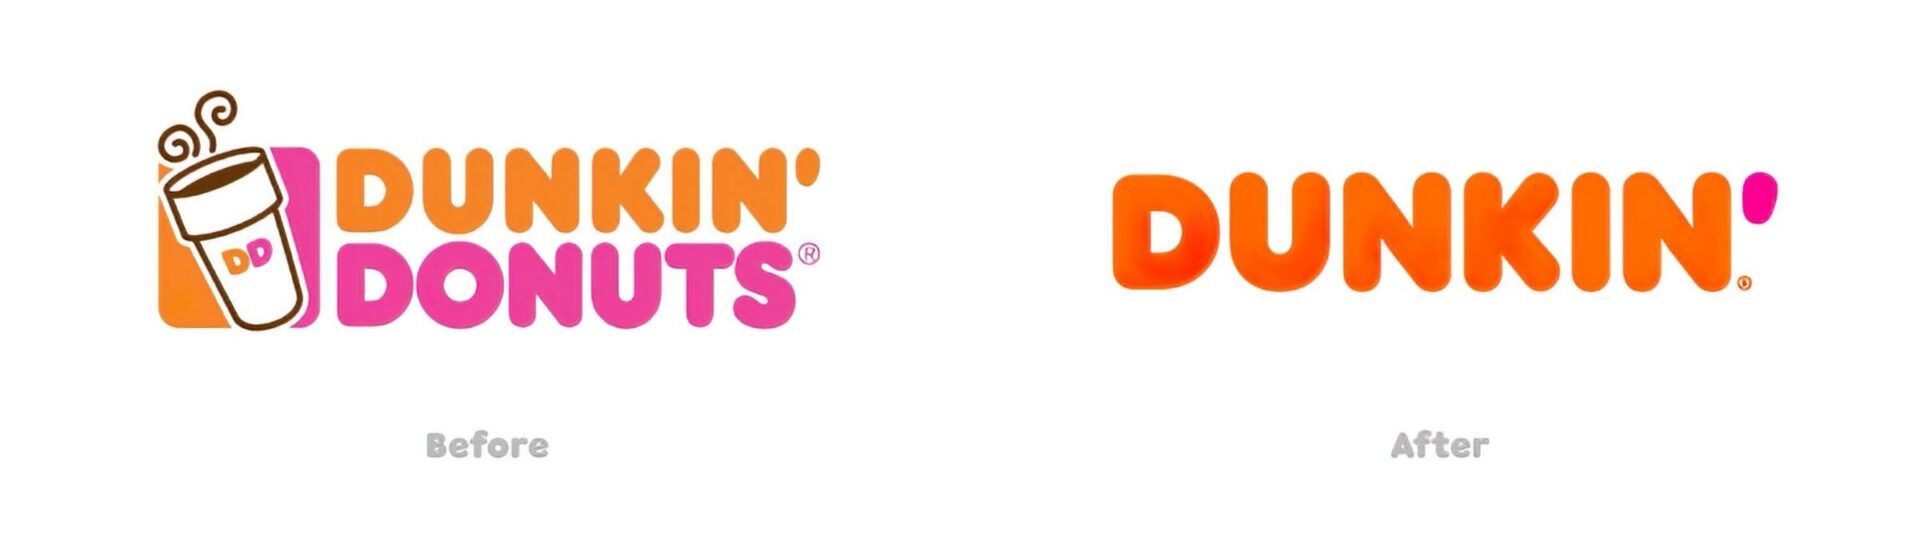 dunkin-rebranding-example 